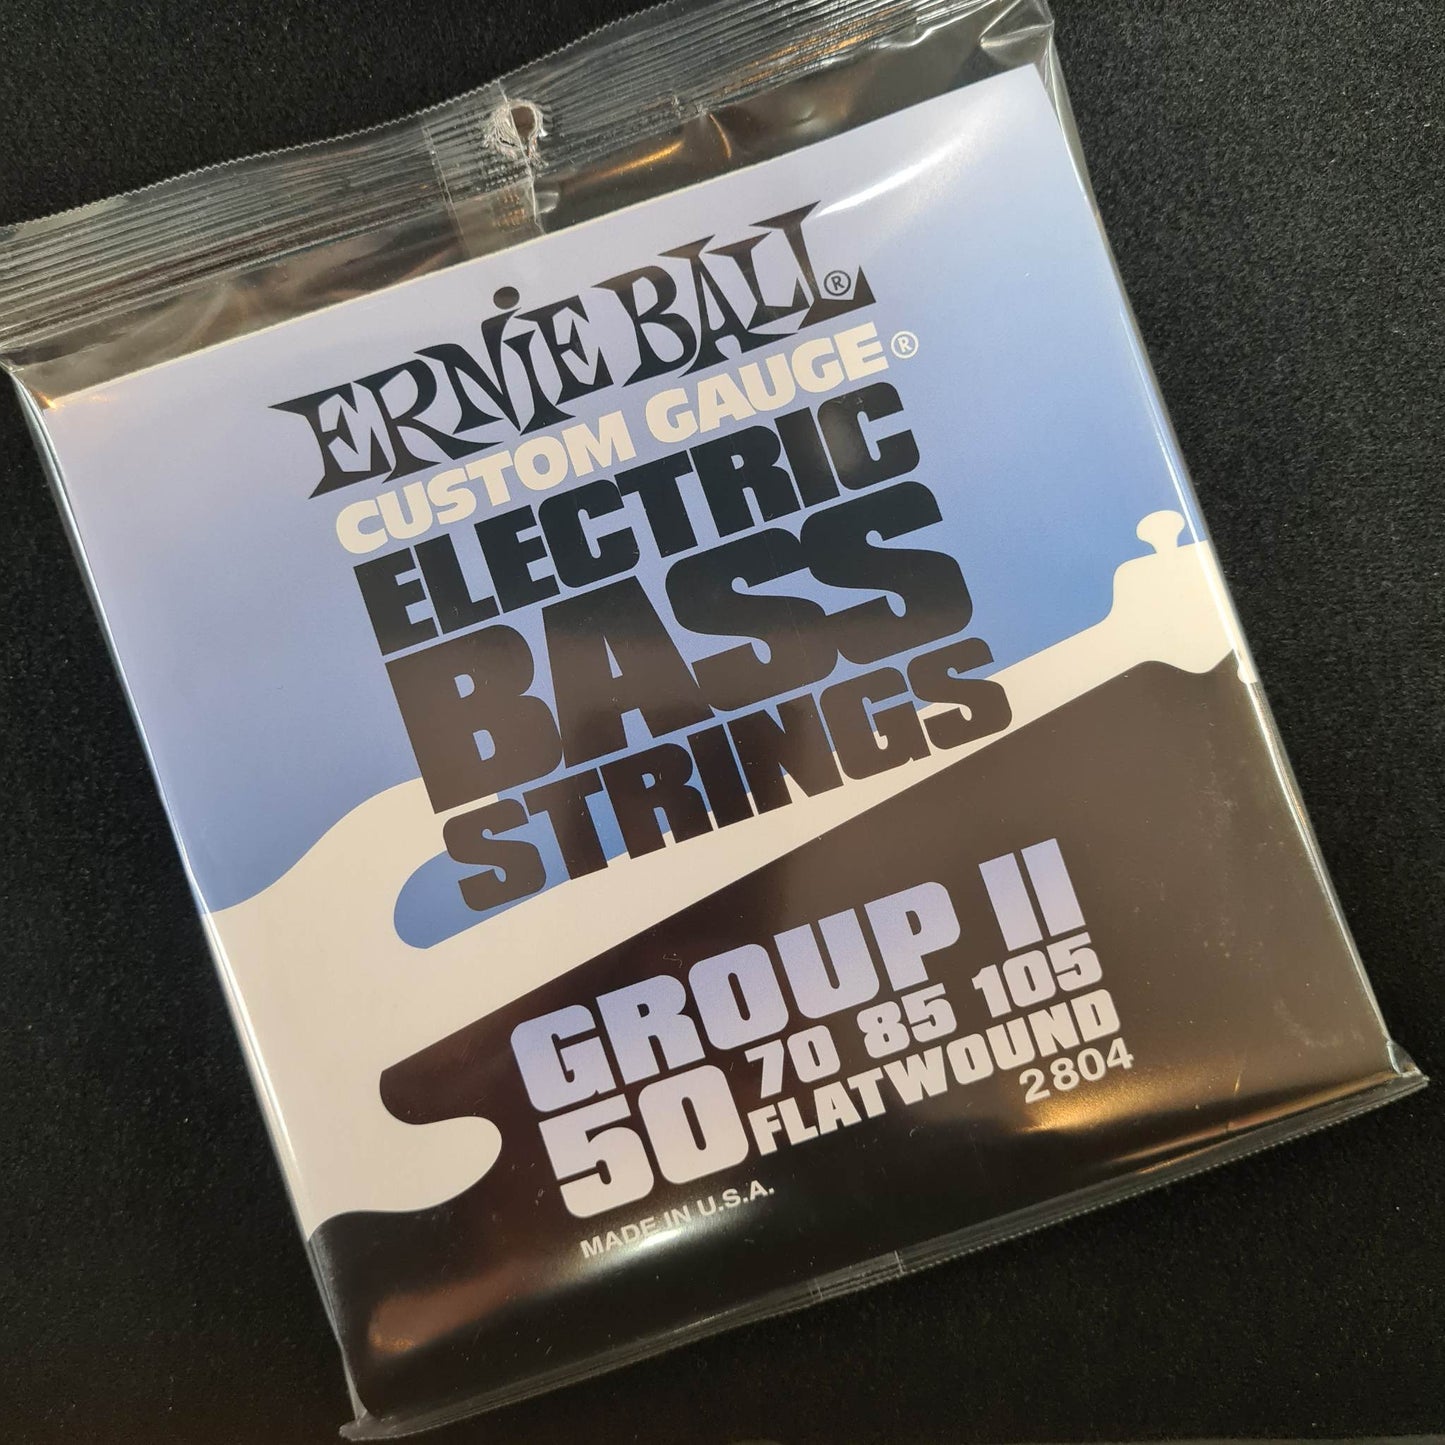 Ernie Ball Bass Flatwound 50-105 Strings